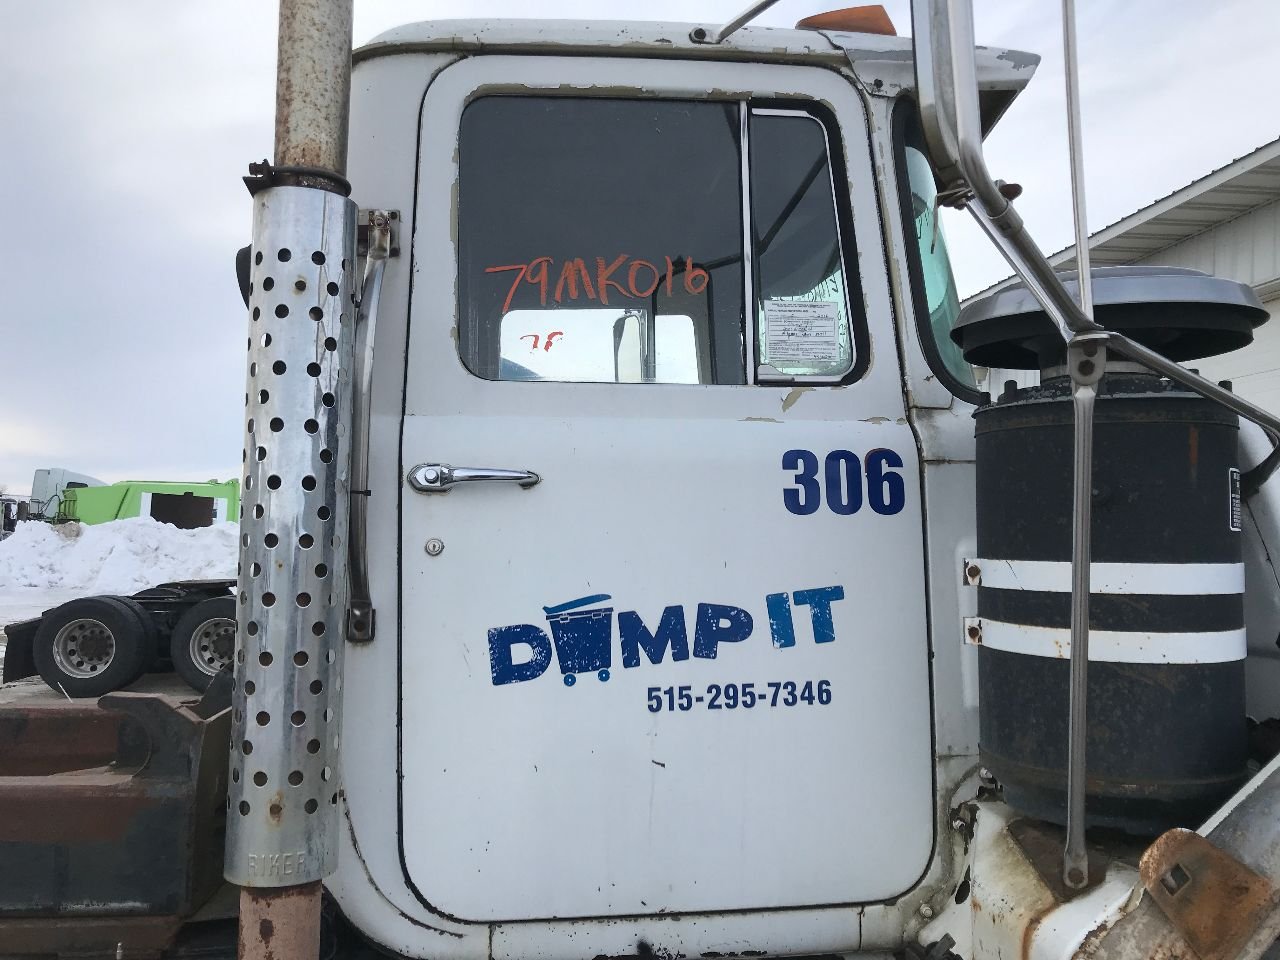 Mack DM600 1/25 big rig semi endt 679 diesel engine motor model truck part lot